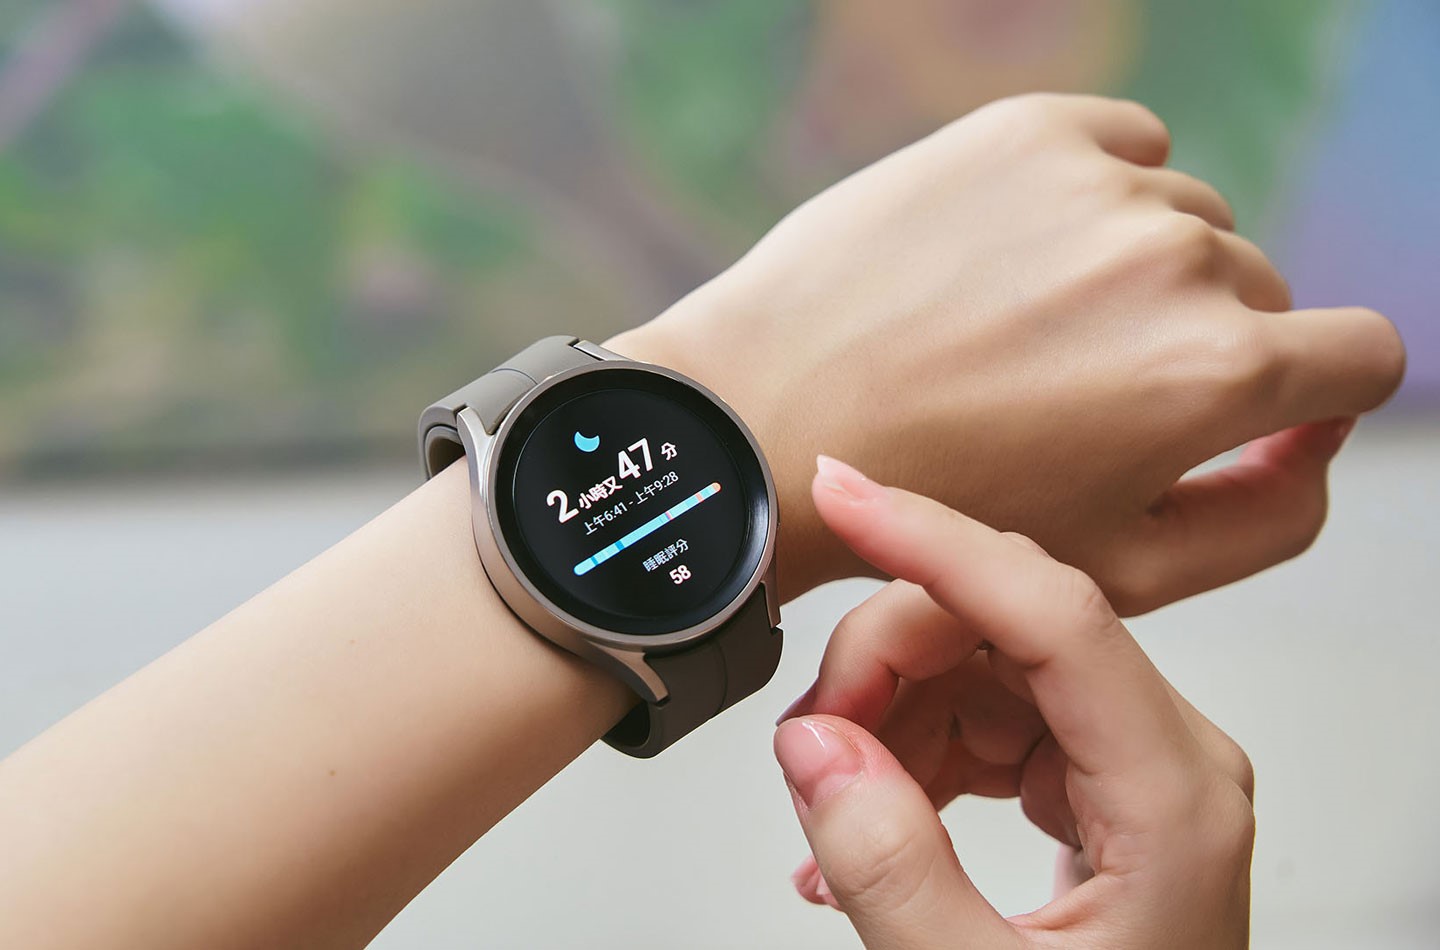 現代人因壓力大、工時長，容易出現睡眠品質不佳的情況，經常一覺醒來覺得還沒睡飽，但卻不了解睡眠究竟出了什麼問題，這時，非常建利用 Galaxy Watch5 Pro 的睡眠偵測功能來收集睡眠時長、深眠與淺眠的時間…相關資訊，並為每一次睡眠進行量化評分，作為改善睡眠狀態的依據。